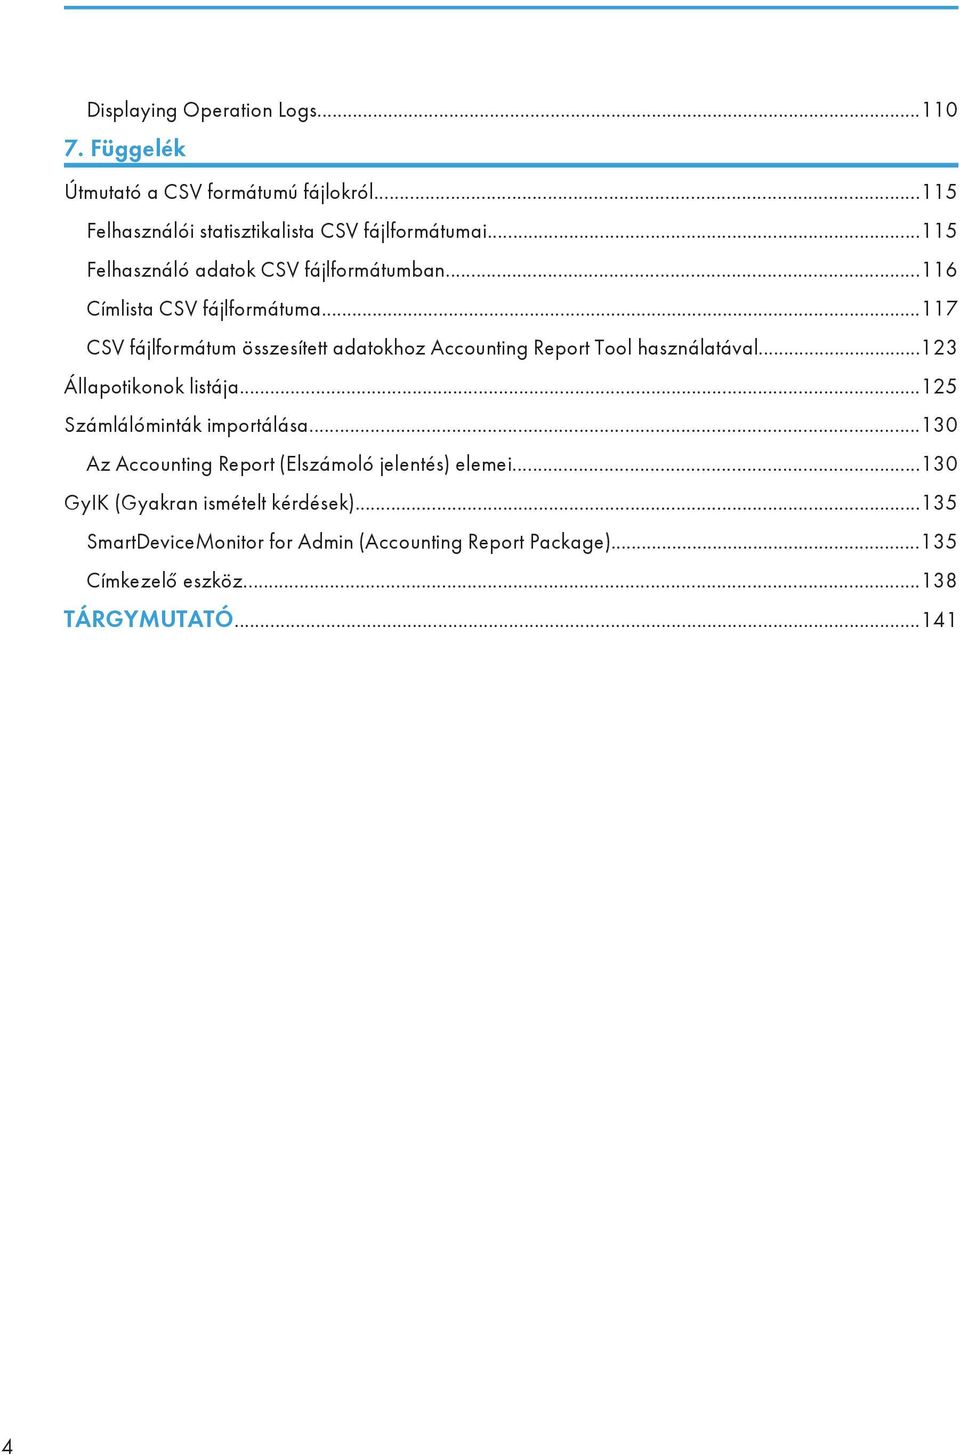 ..117 CSV fájlformátum összesített adatokhoz Accounting Report Tool használatával...123 Állapotikonok listája.